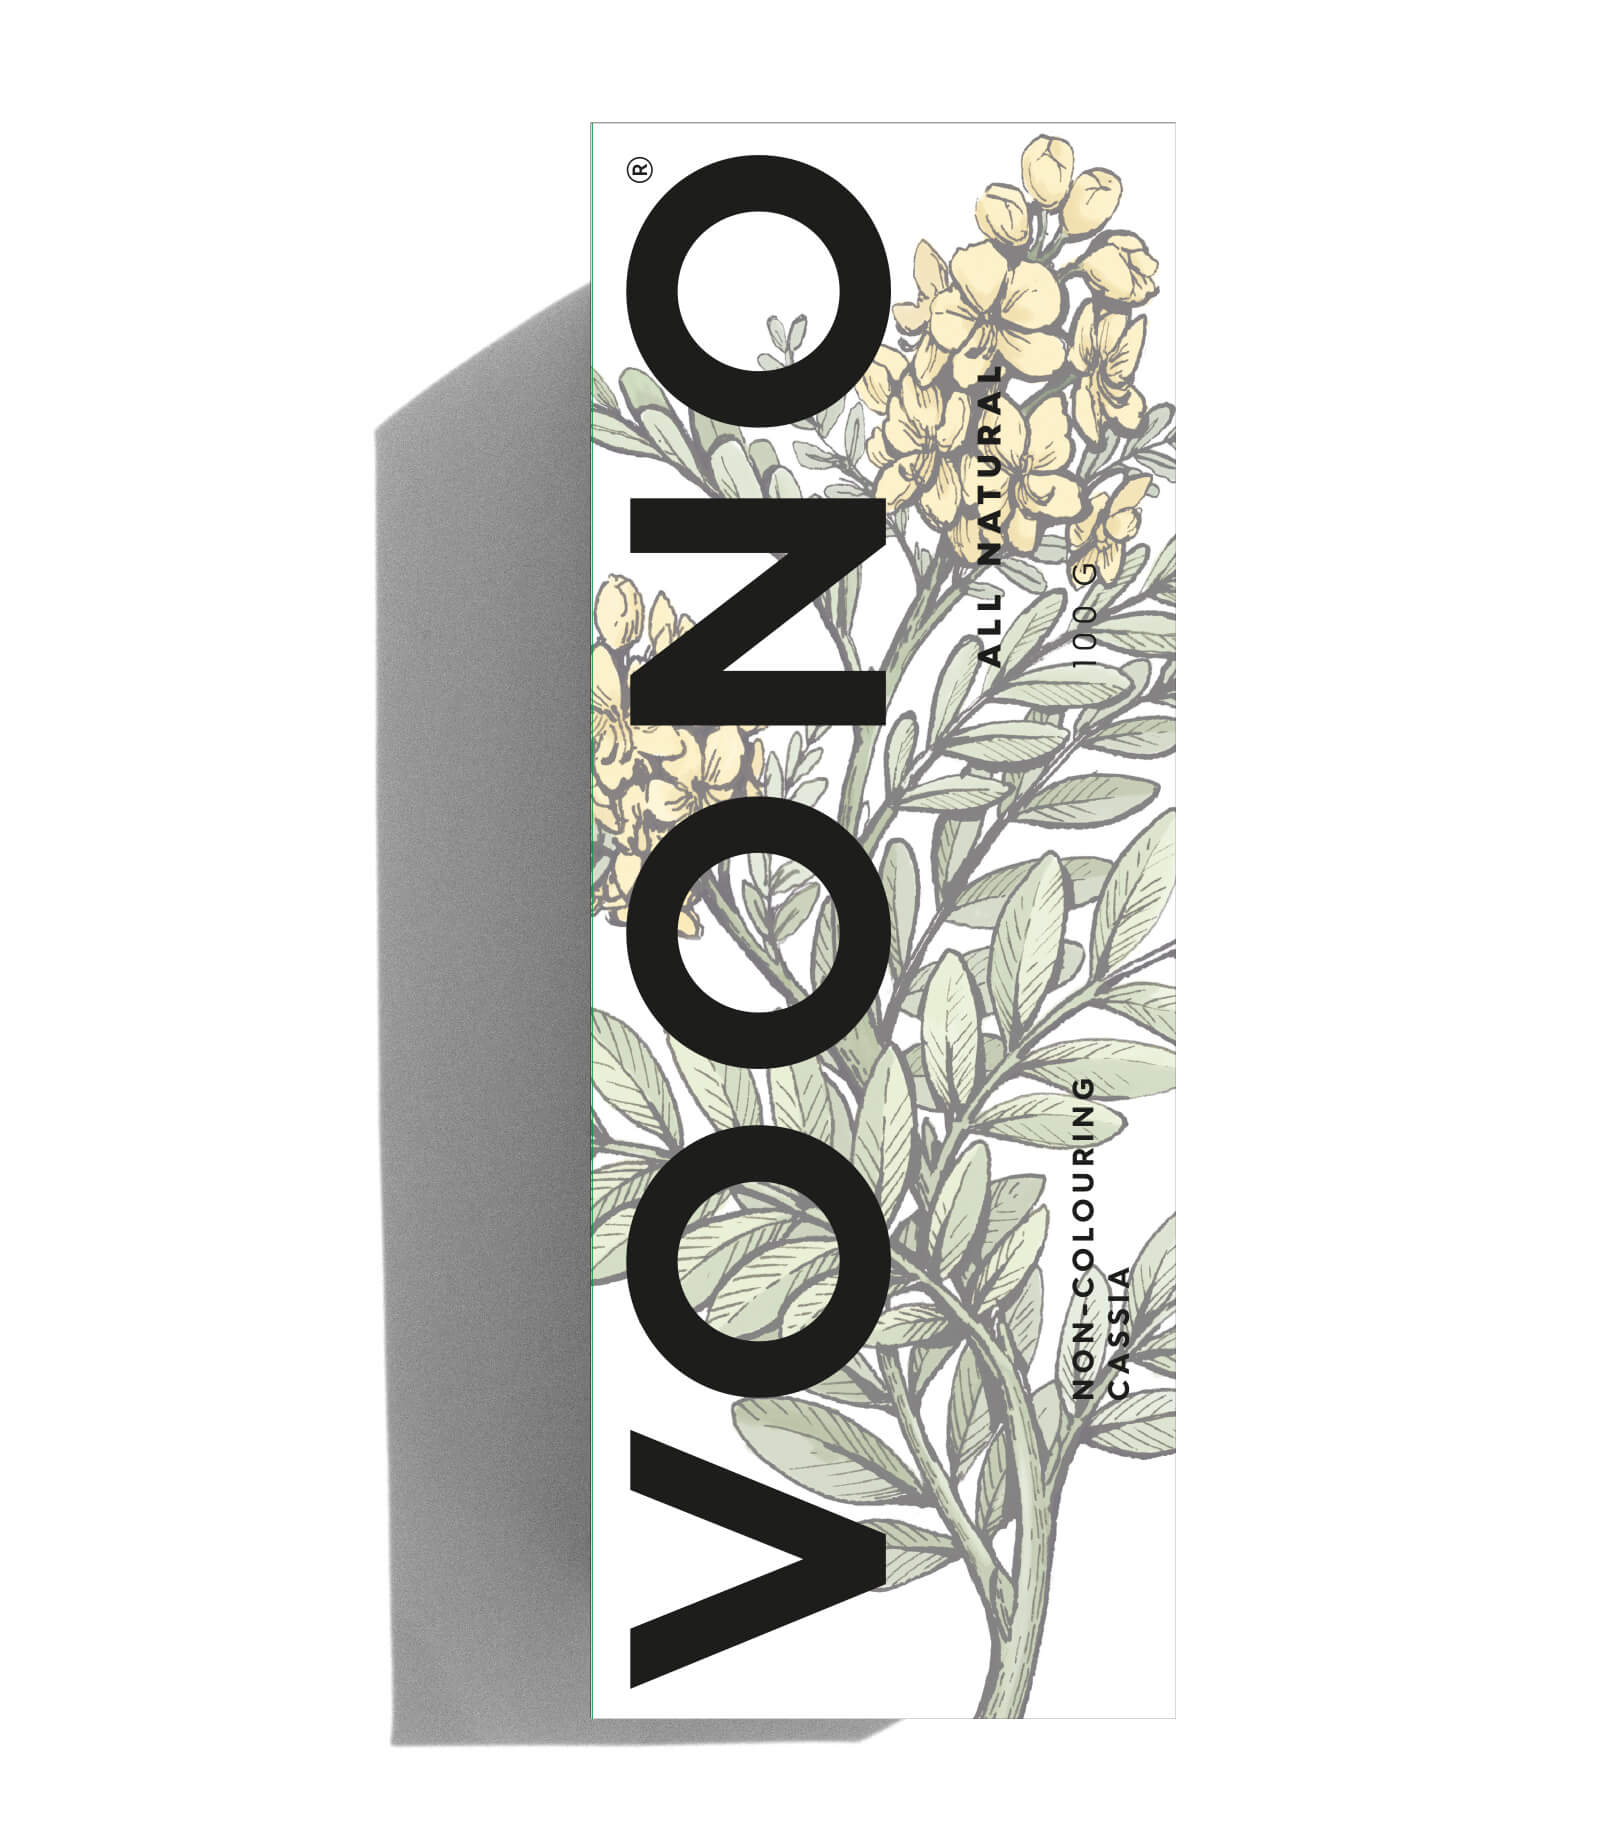 Zobrazit detail výrobku VOONO Henna Cassia Obovata 100 g